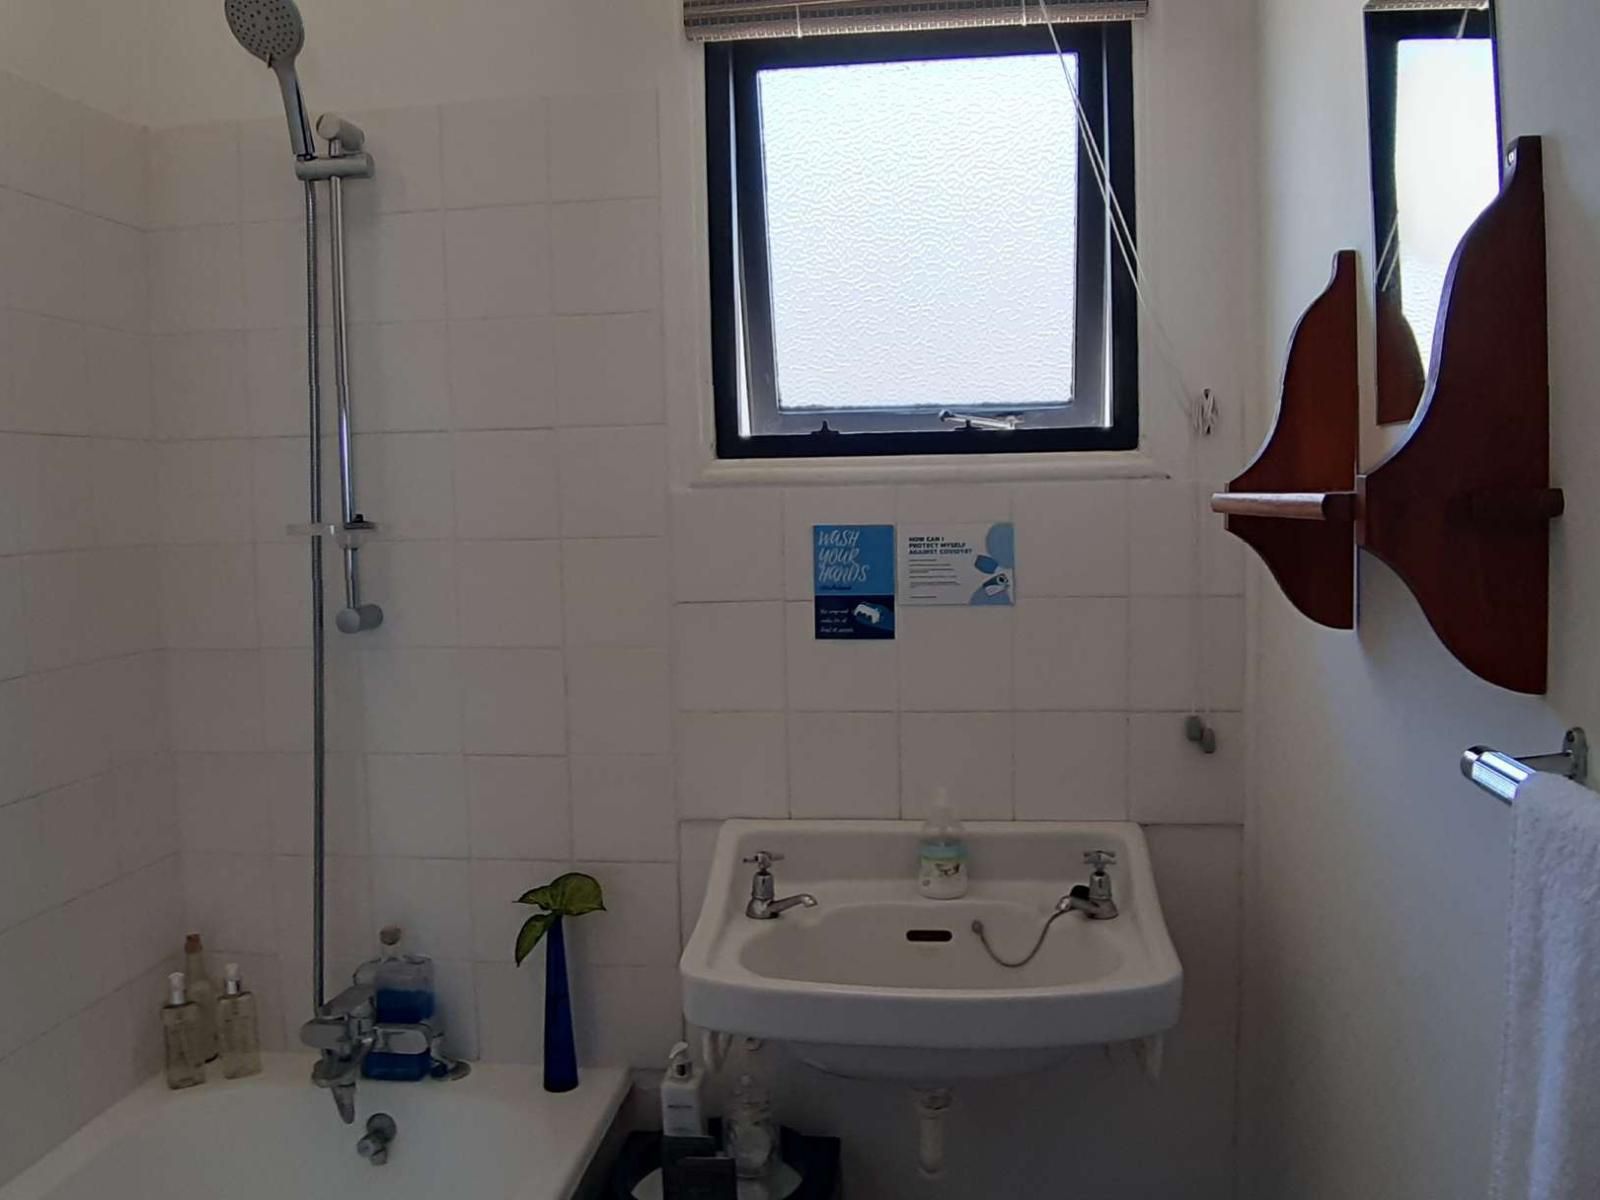 Fonteintjies Vleesbaai Western Cape South Africa Unsaturated, Bathroom